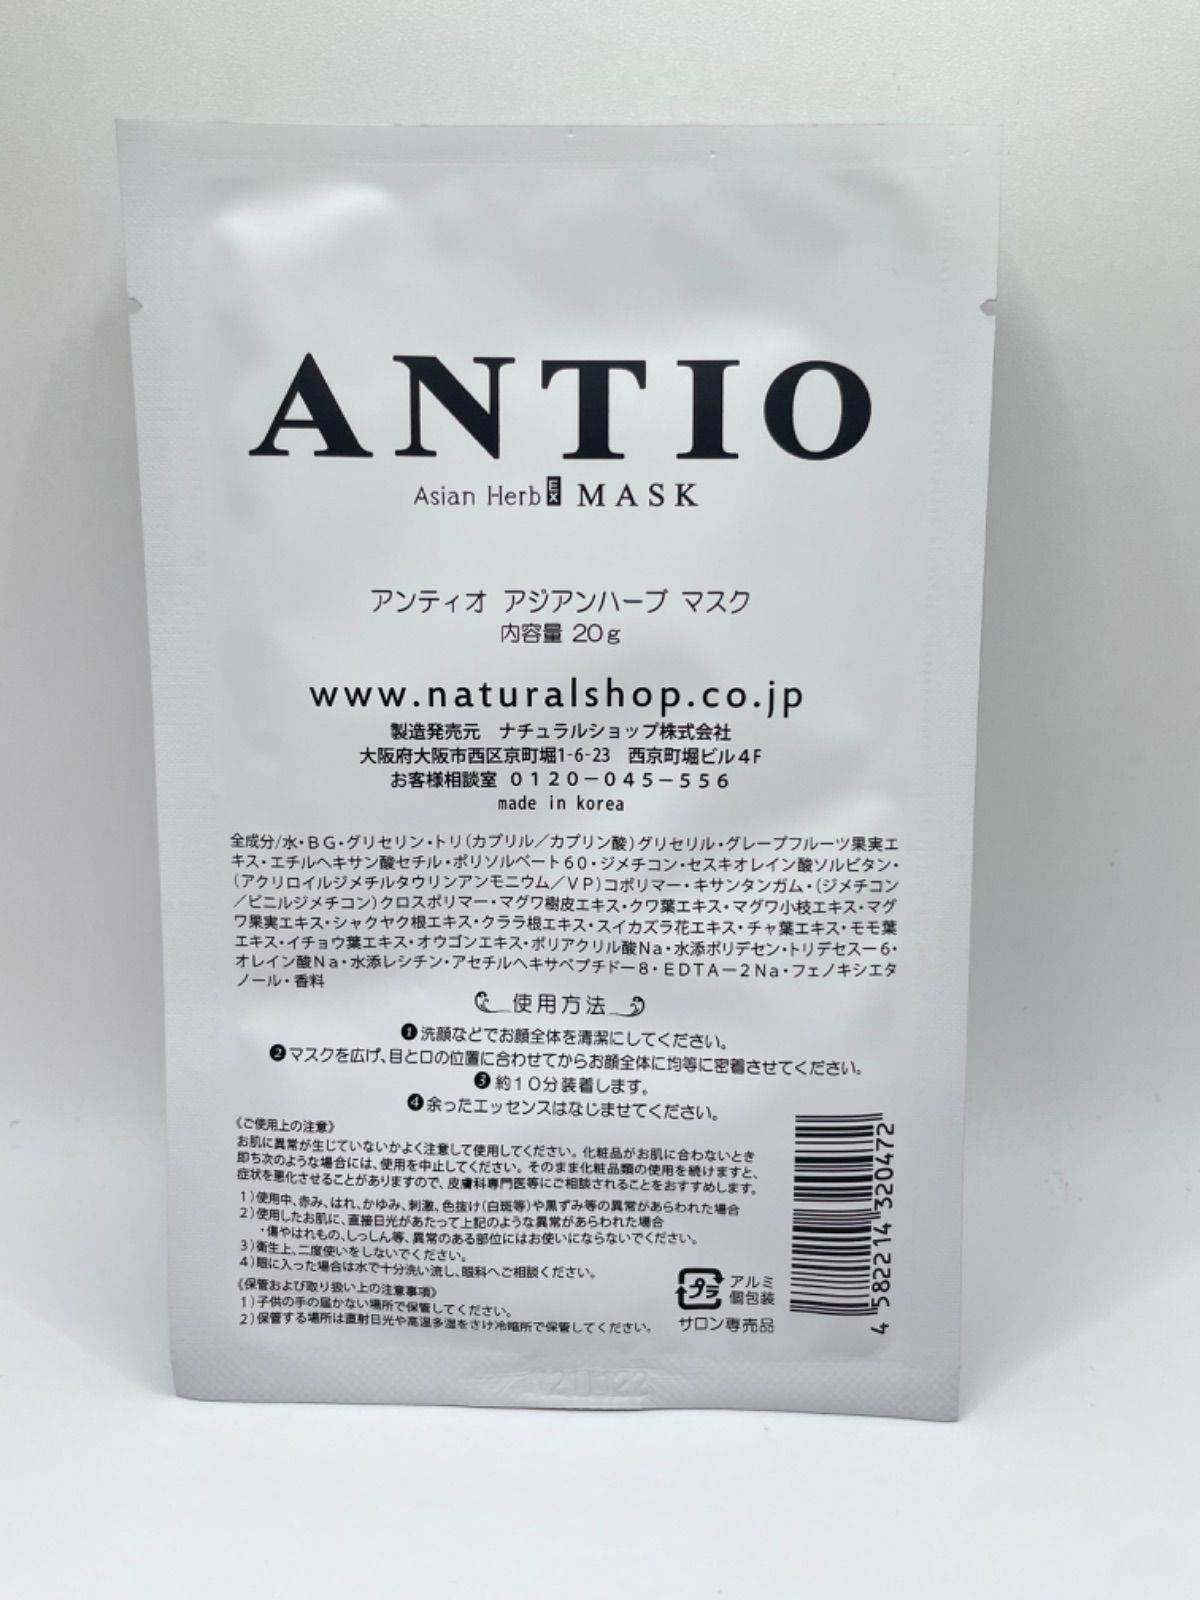 超特価激安 新製品ANTIO アジアンハーブ マスクFN 27g 5枚入 econet.bi